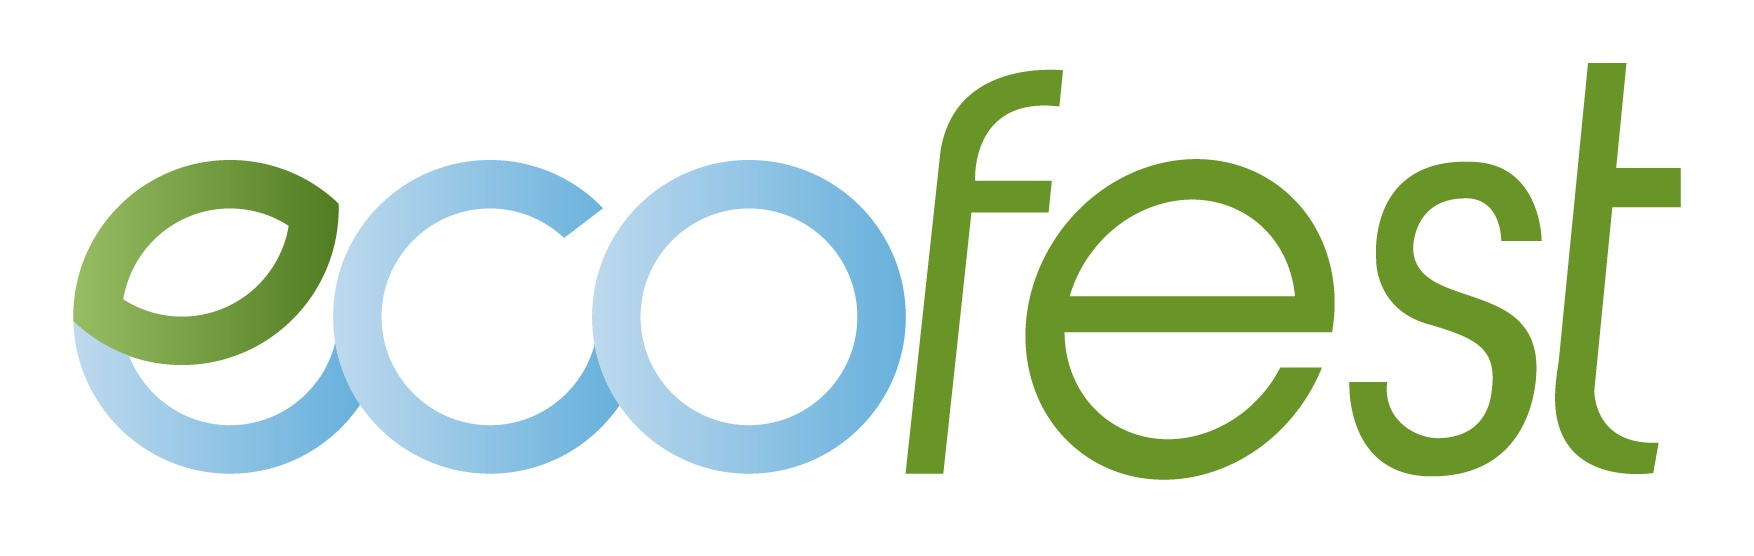 Ecofest, le label valorisant les événements éco-responsables – RESES